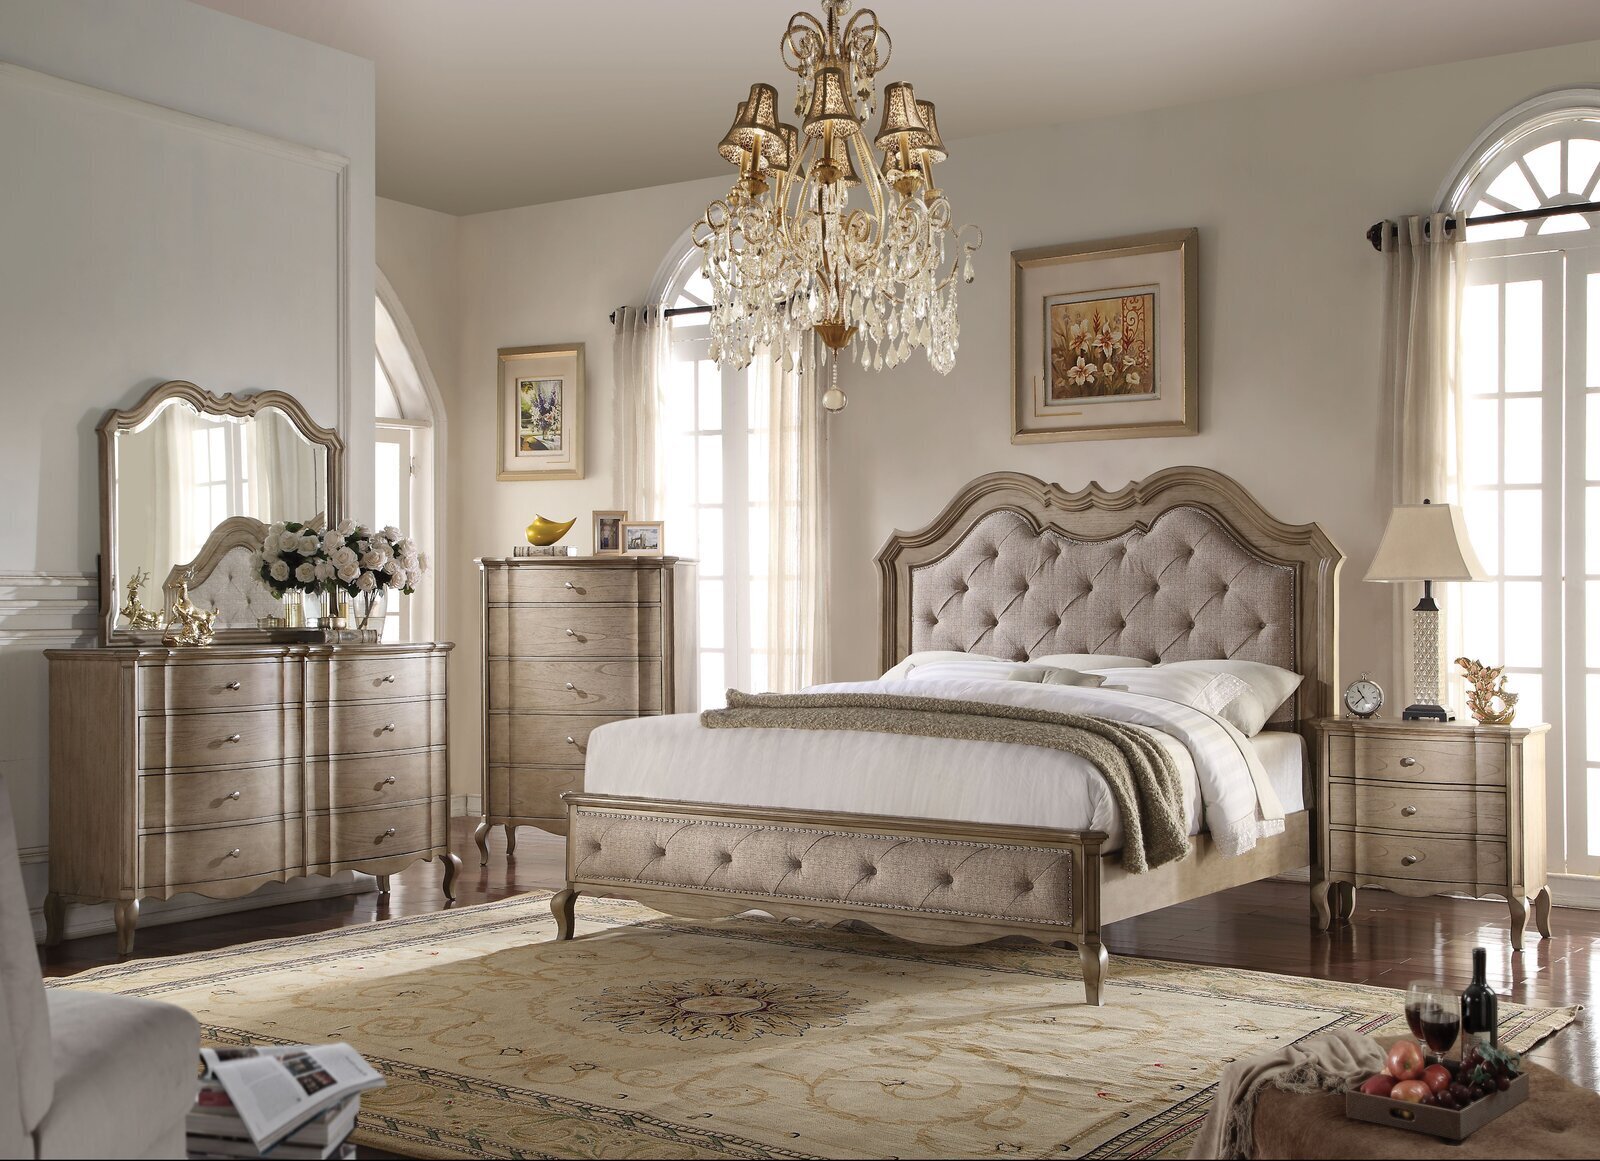 Opulent French provincial bedroom set